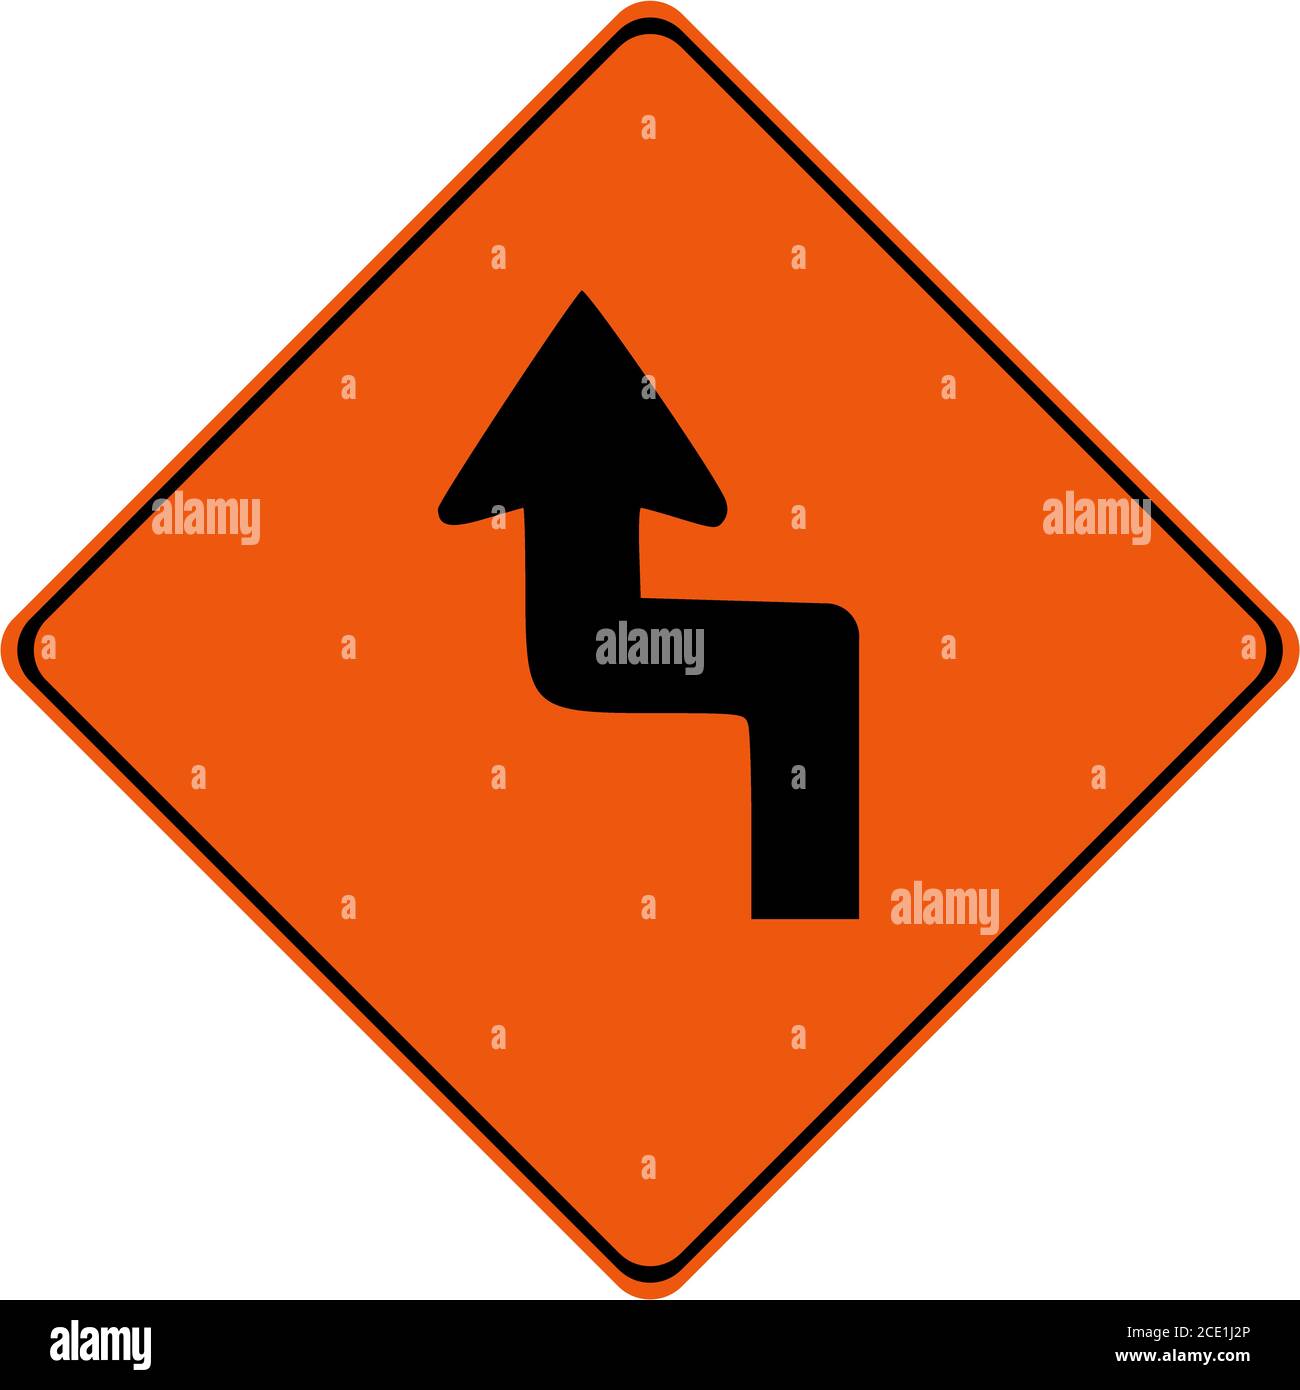 Segnale di avvertimento con curve pericolose simbolo Foto Stock